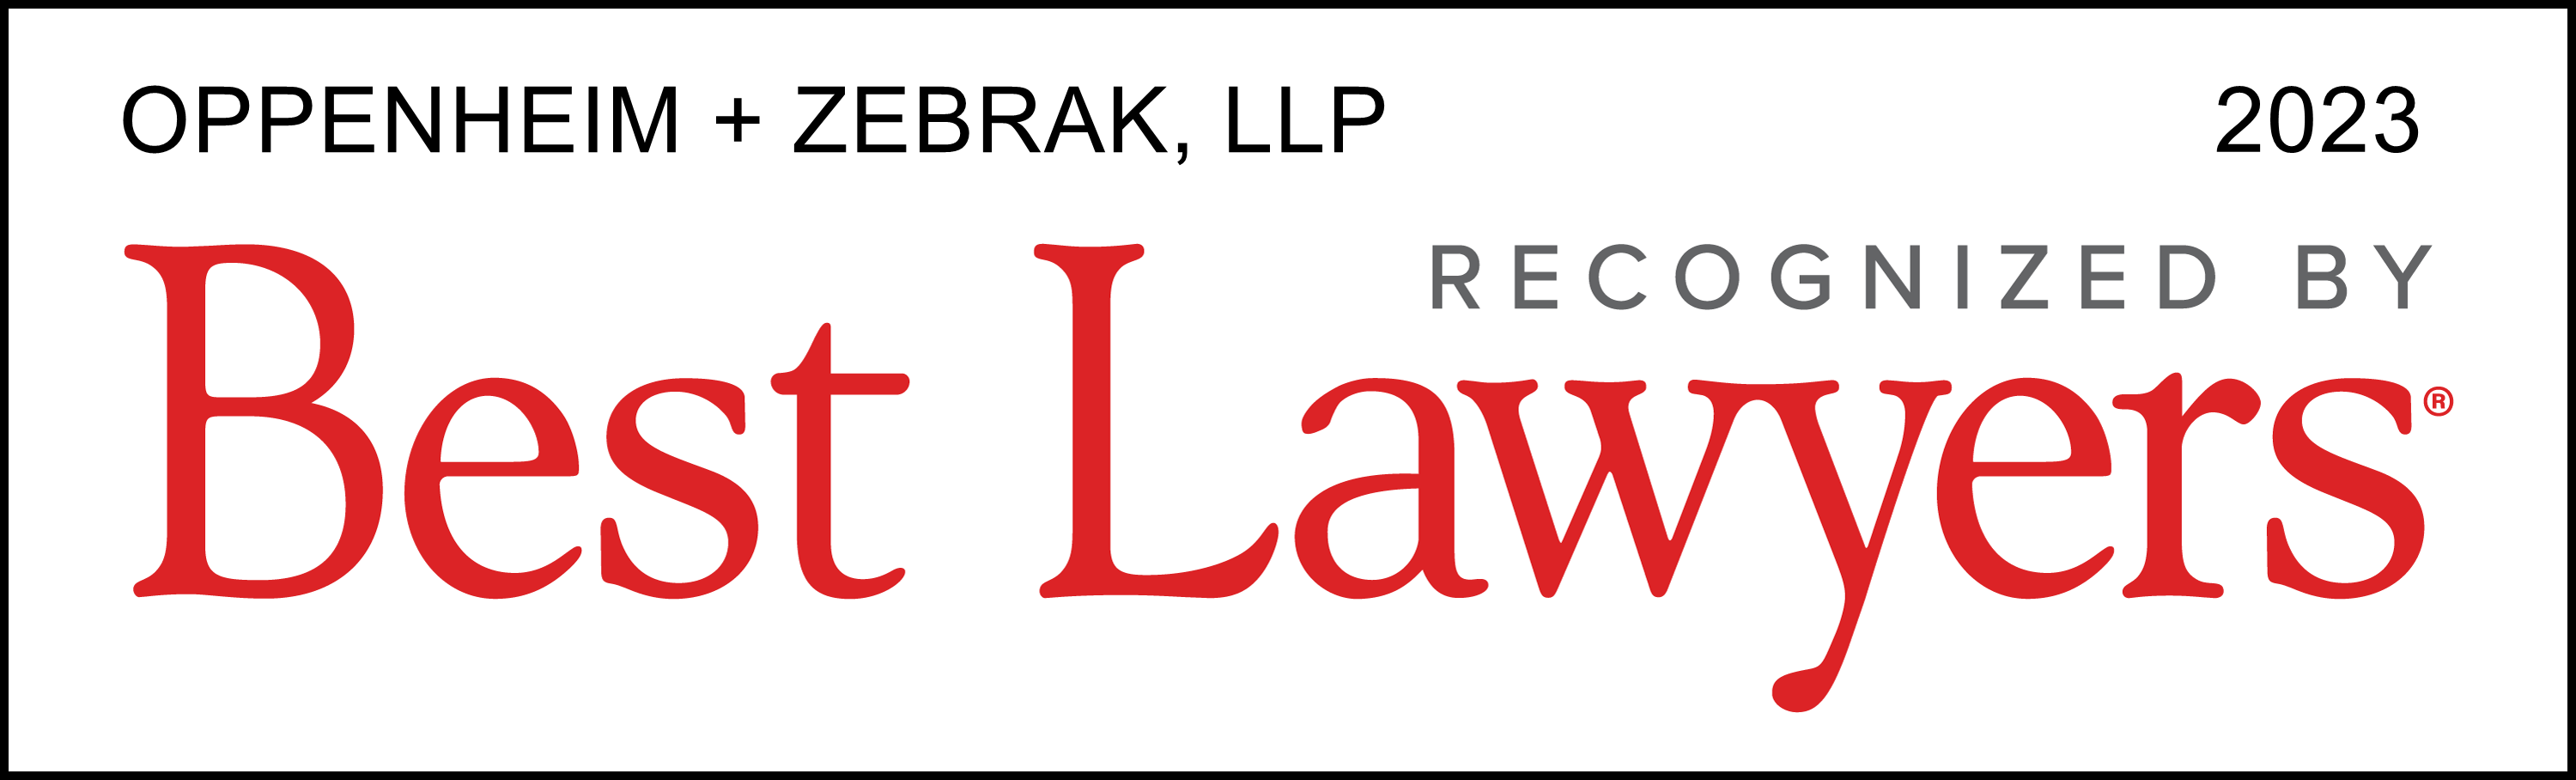 Best Lawyers - O+Z (Oppenheim + Zebrak), 2023 - Firm Logo